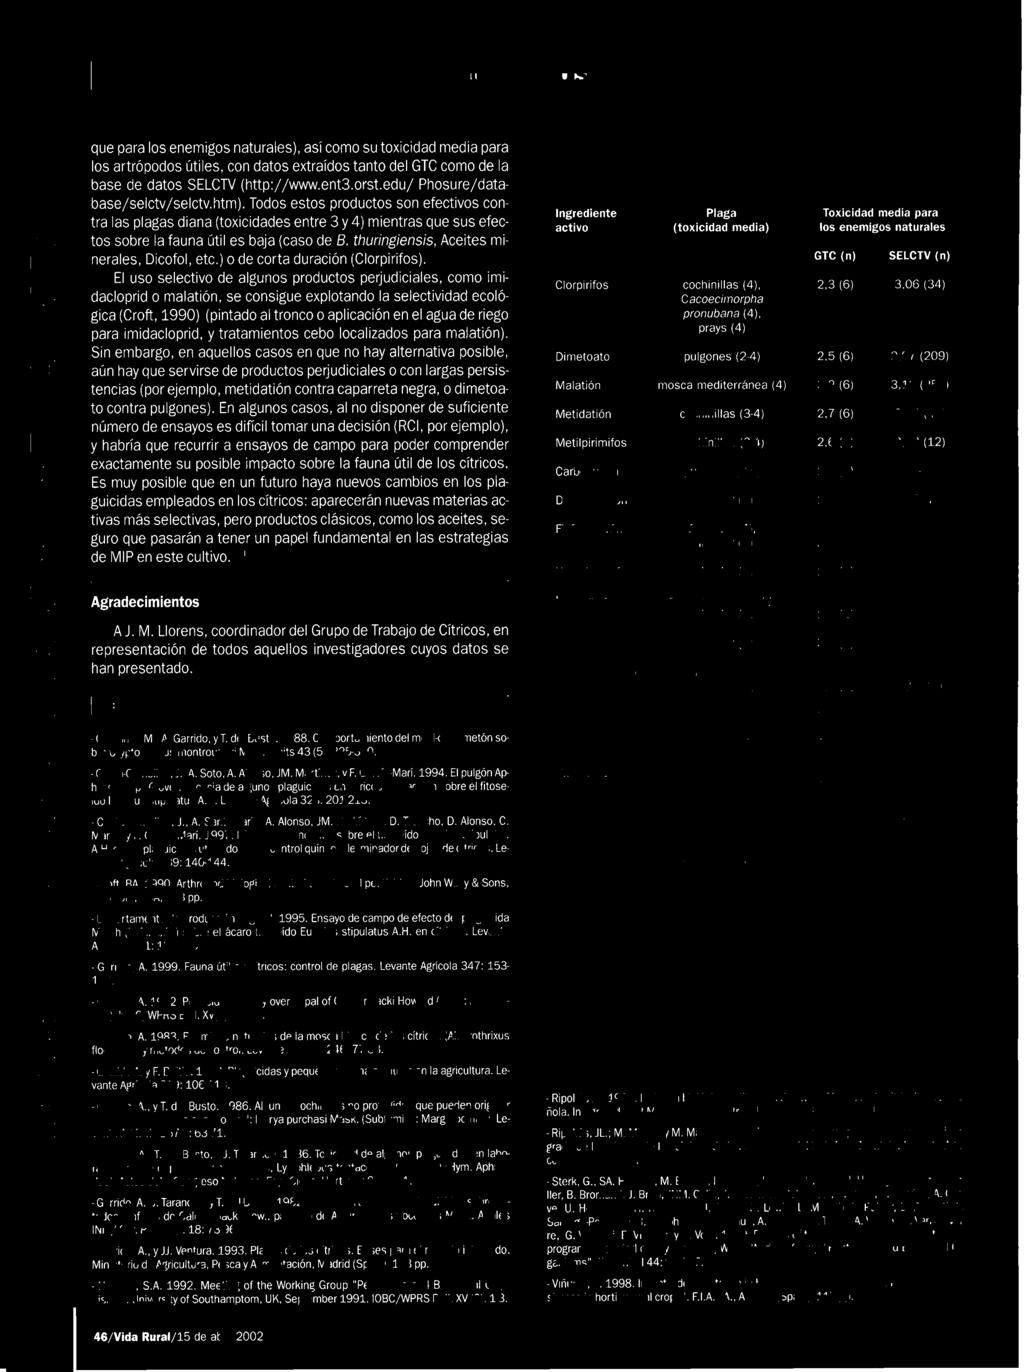 Alonso, JM. Rodríguez, D. Troncho, D. Alonso, C. Marzal y F. García-Marí. 1997. Efectos secundarios sobre el fitoseído Euseius stipulatus A.H.